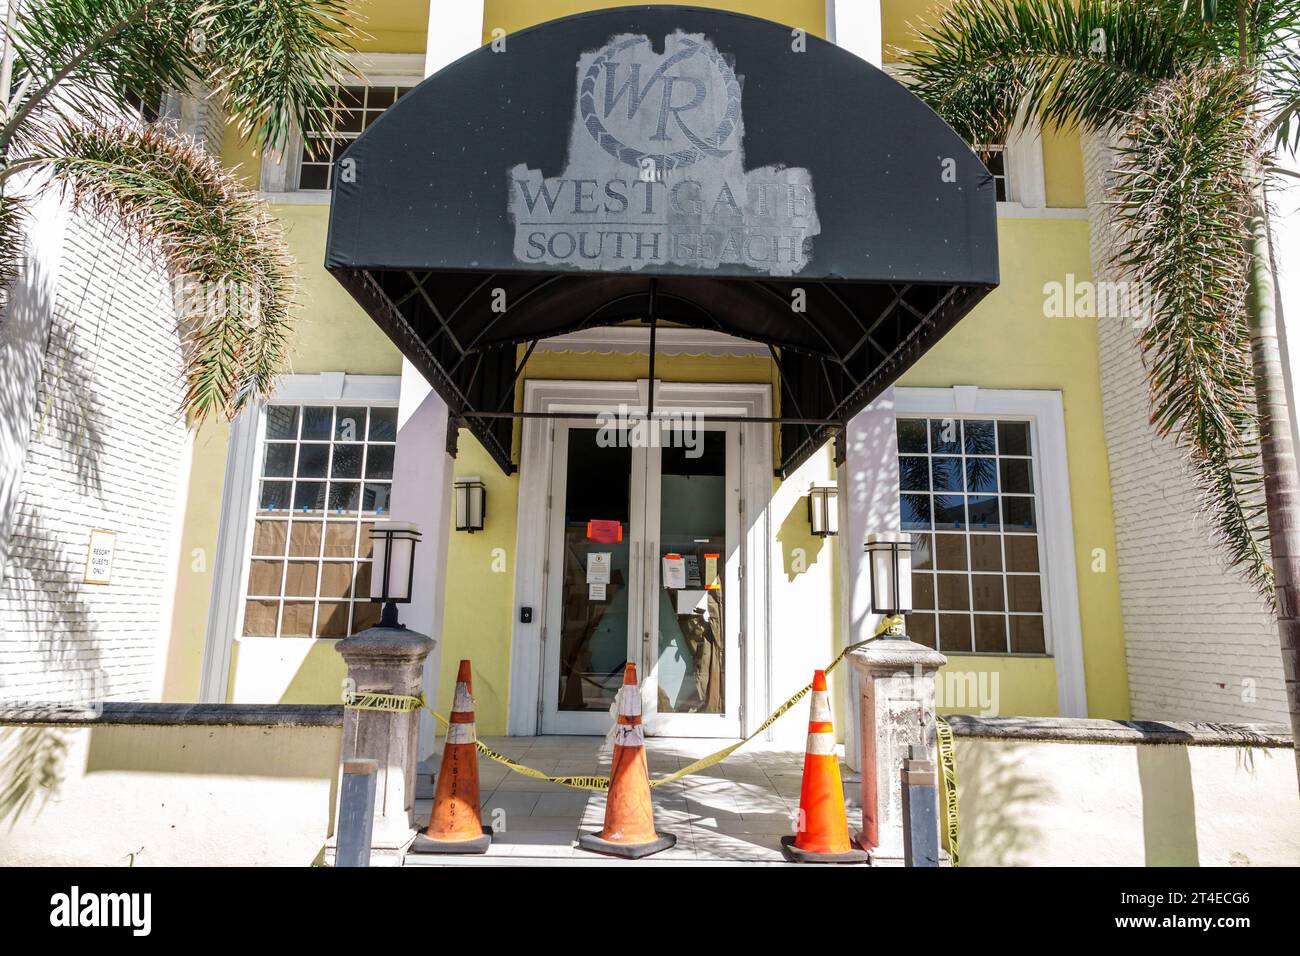 Miami Beach Florida, Außenansicht, Hotel vor dem Eingang des Gebäudes, Collins Avenue, Westgate South Beach Oceanfront Resort geschlossen, Code-Genehmigung vorhanden Stockfoto